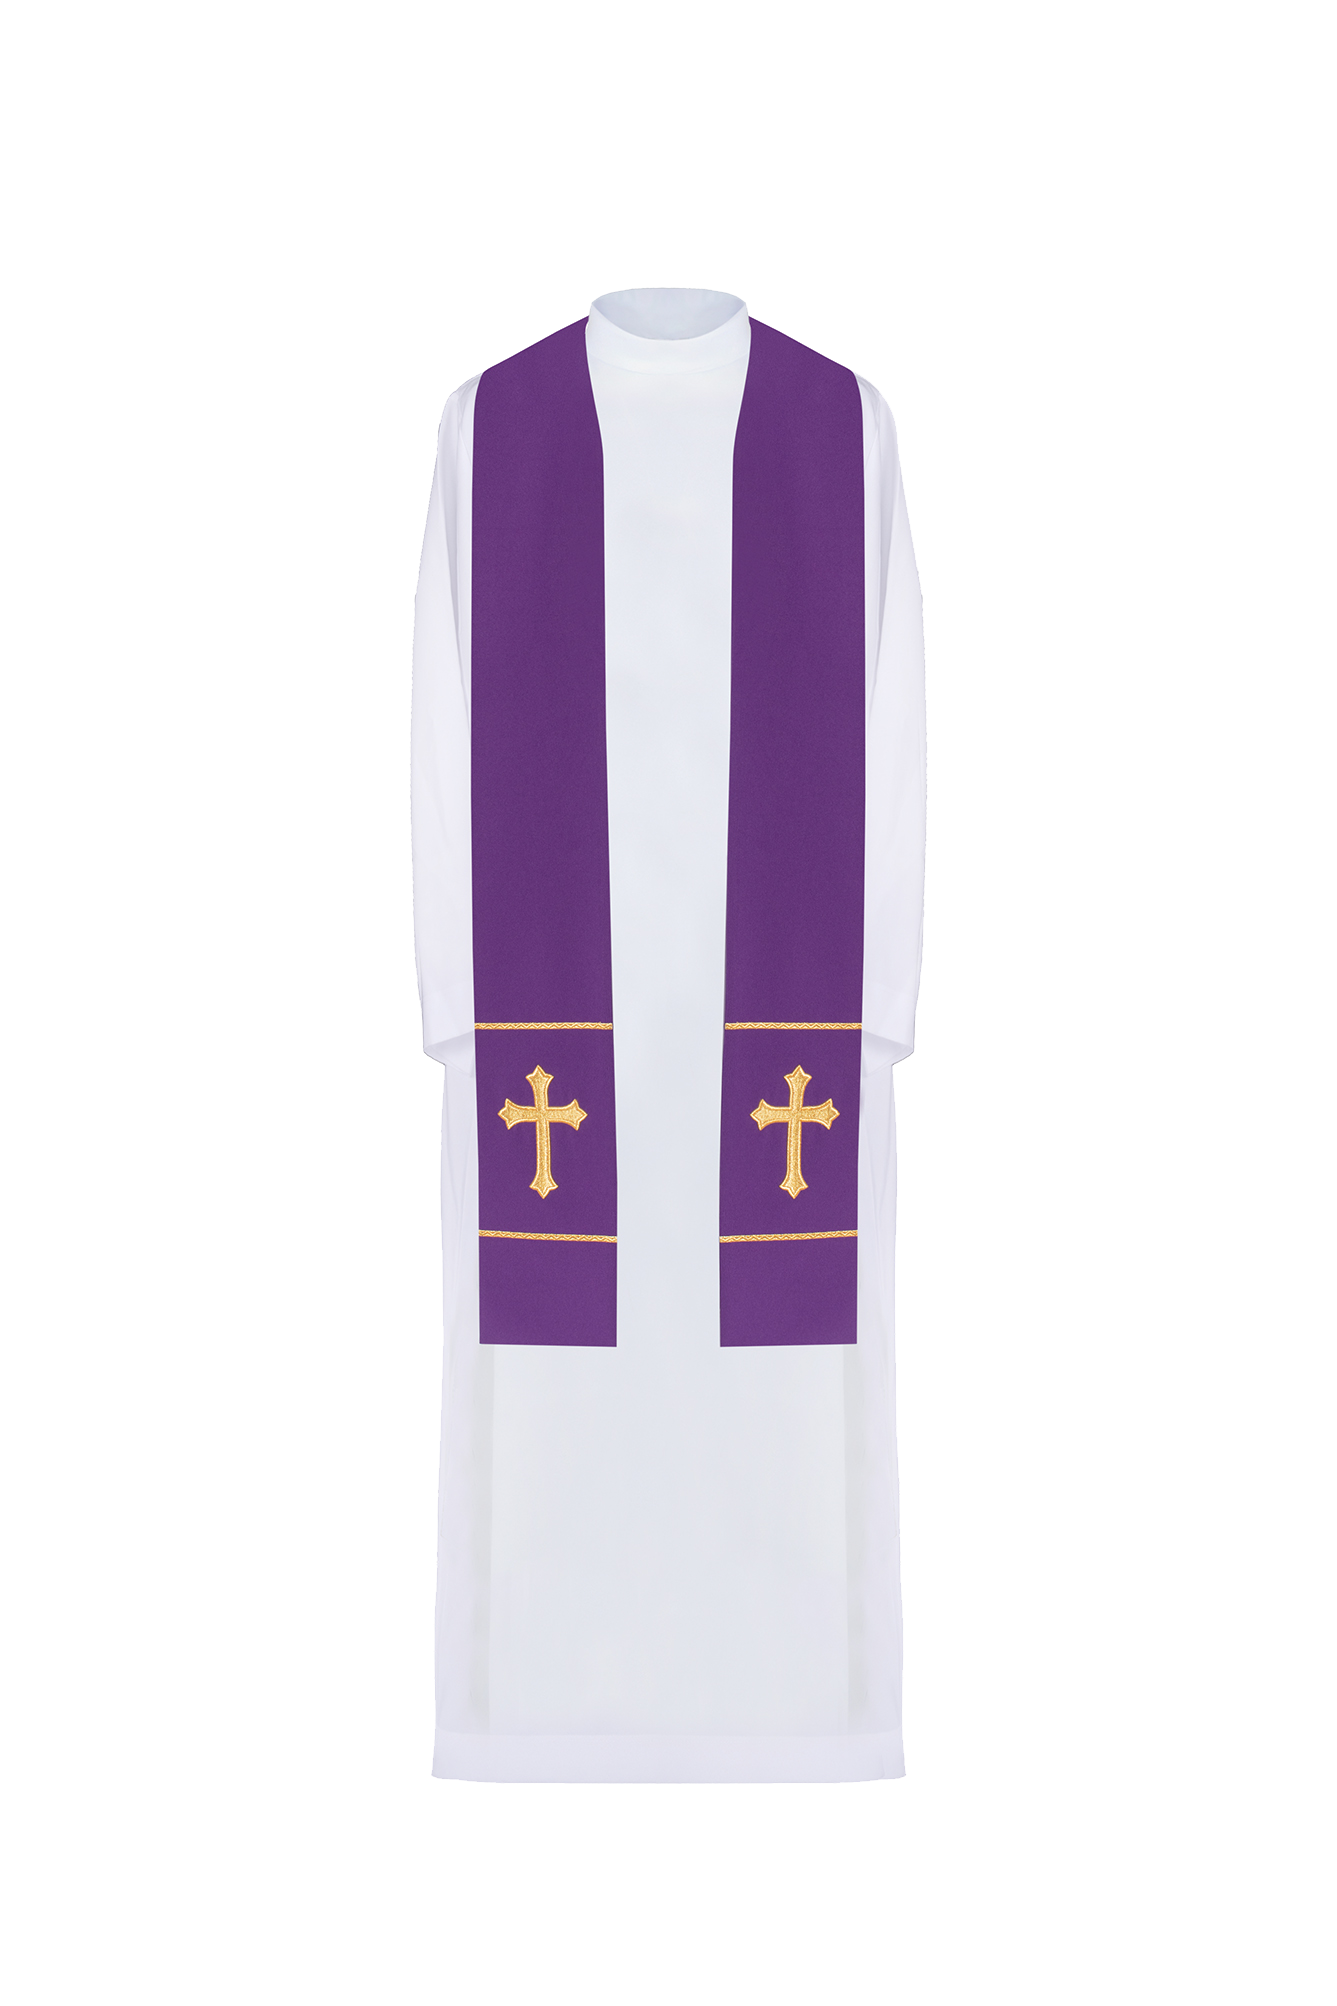 Stuła kapłańska fioletowa haftowana Krzyż